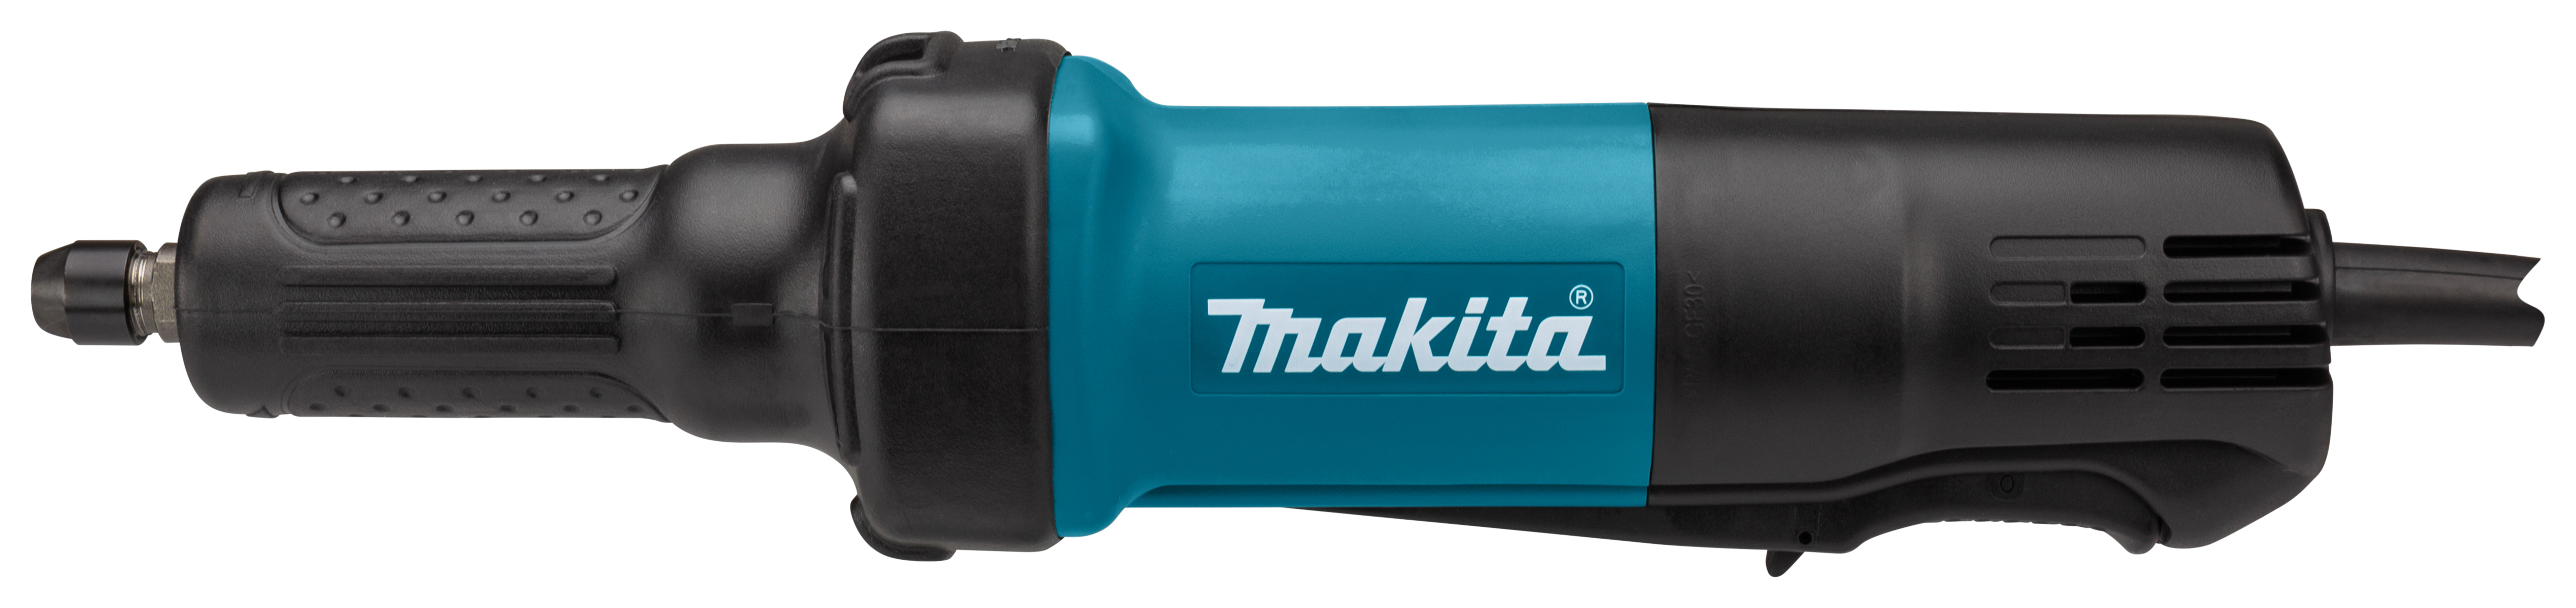 Makita GD0600 230 V Rechte slijper | Mtools